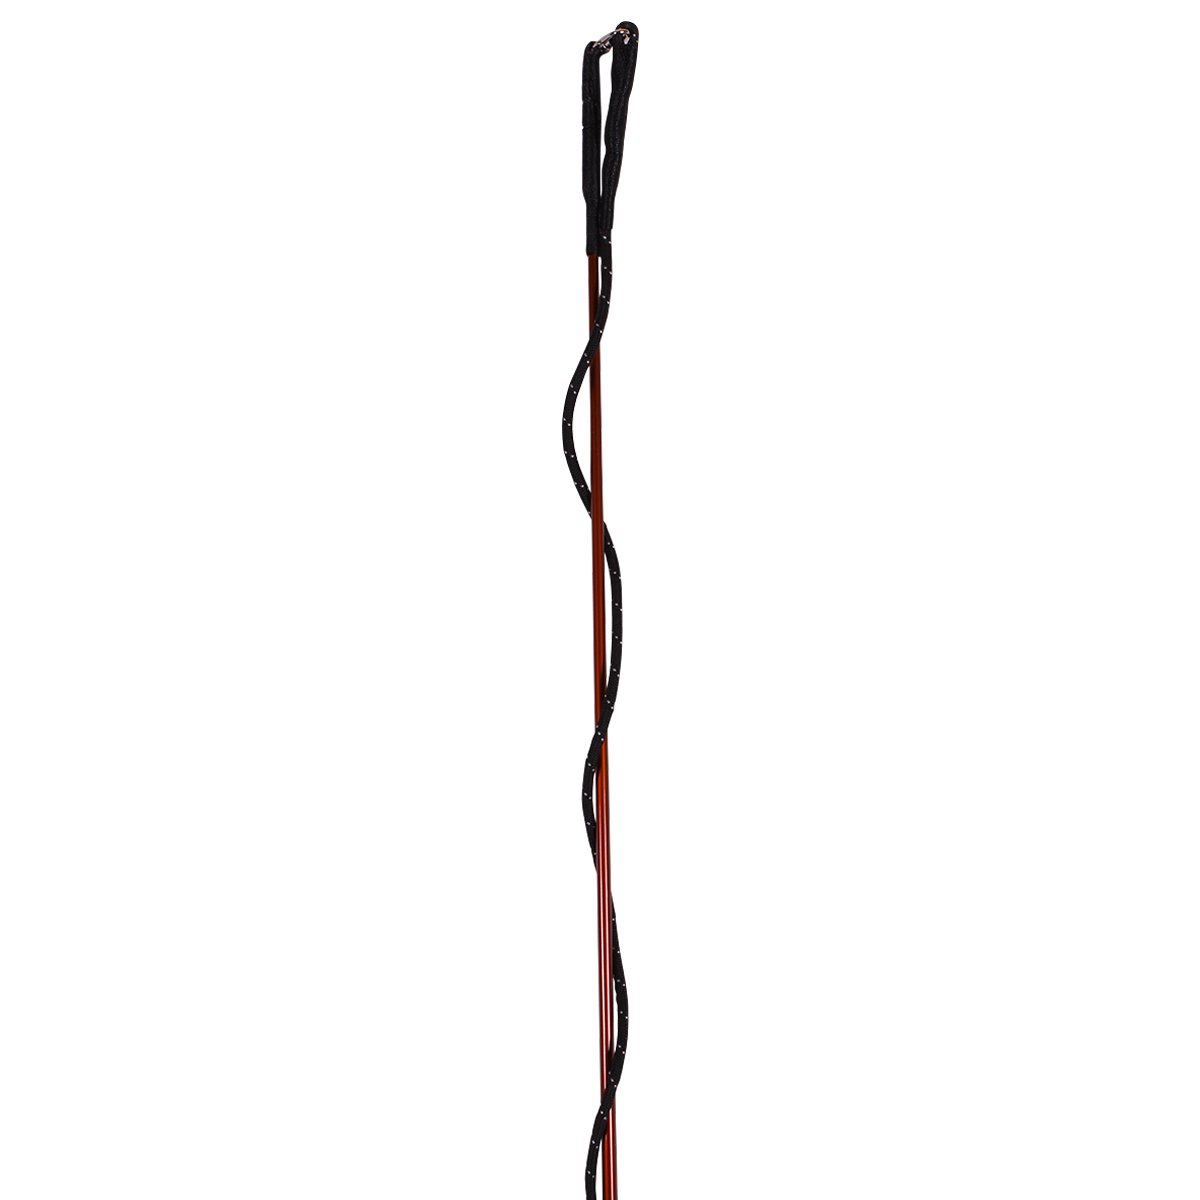 Longeerzweep Lammert Haanstra Coloured Bruin, 200 cm in bruin